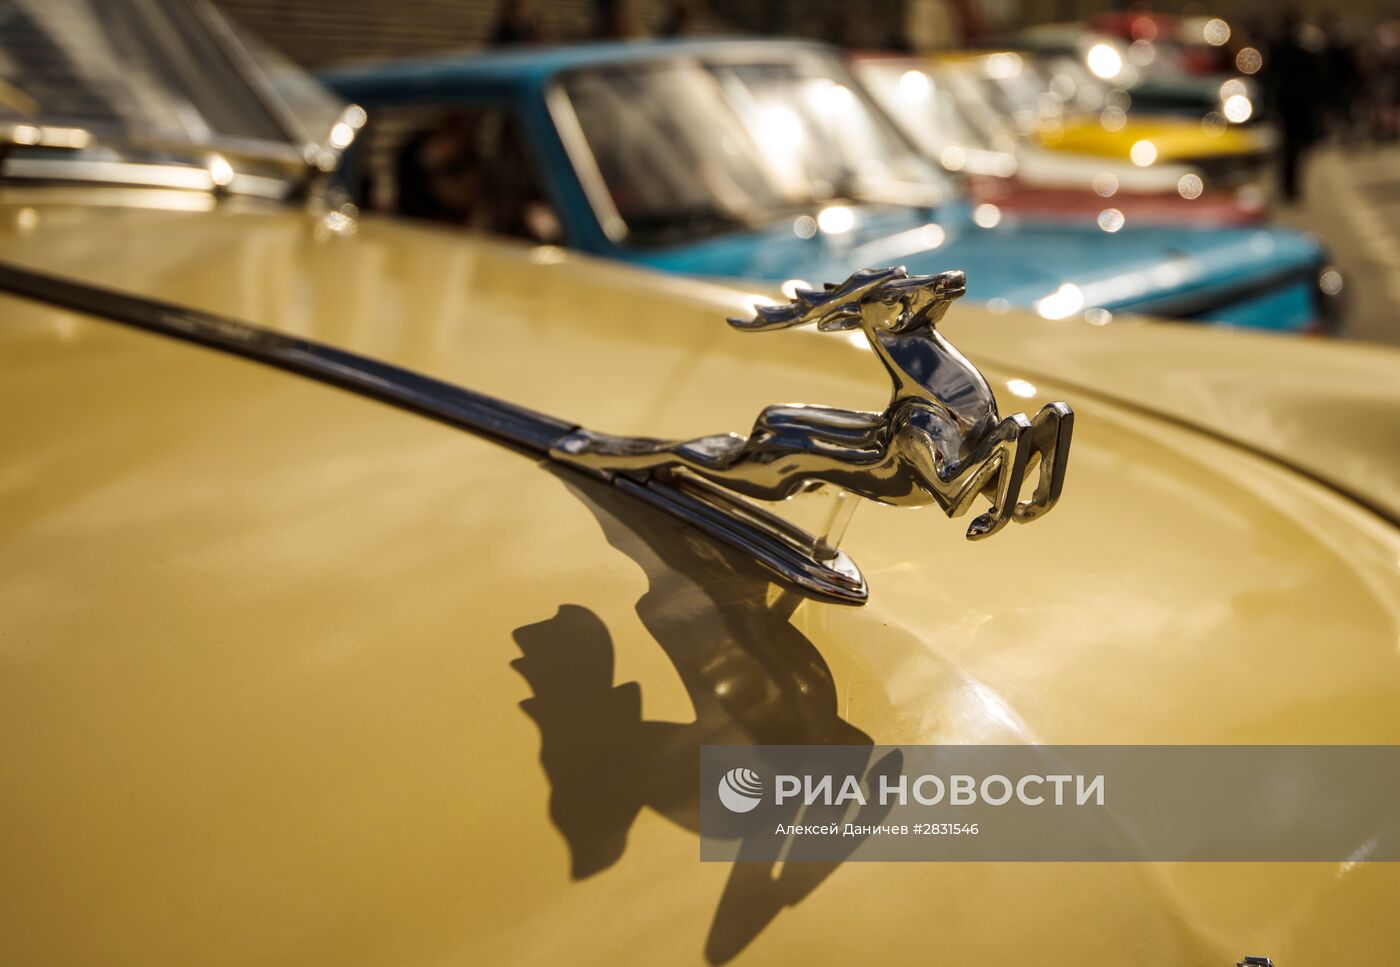 Выставка ретро-автомобилей в Санкт-Петербурге